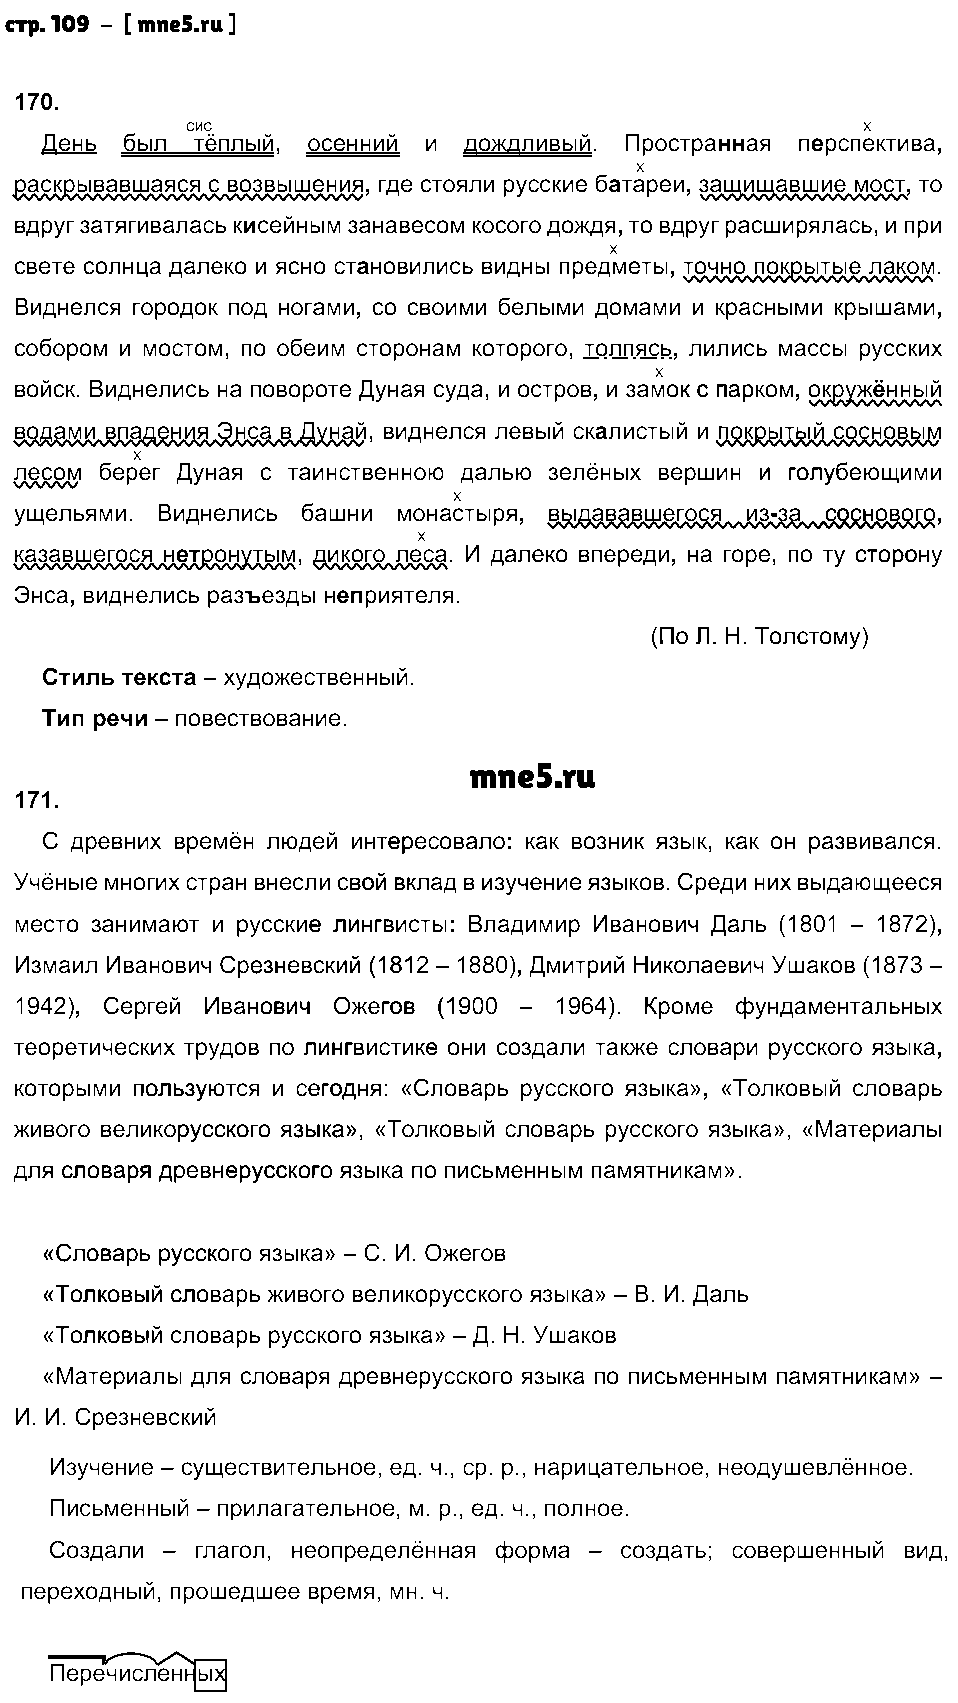 ГДЗ Русский язык 8 класс - стр. 109